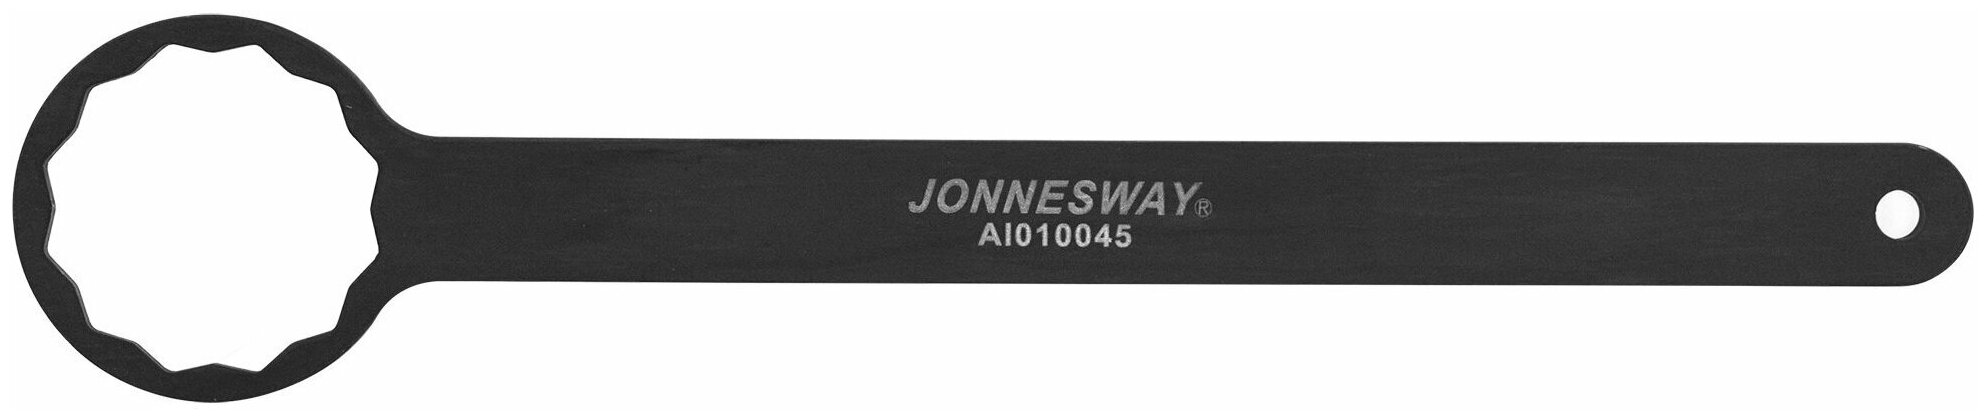 Ключ 12-гранный для обслуживания привода распределительного вала SUBARU IMPREZA Jonnesway